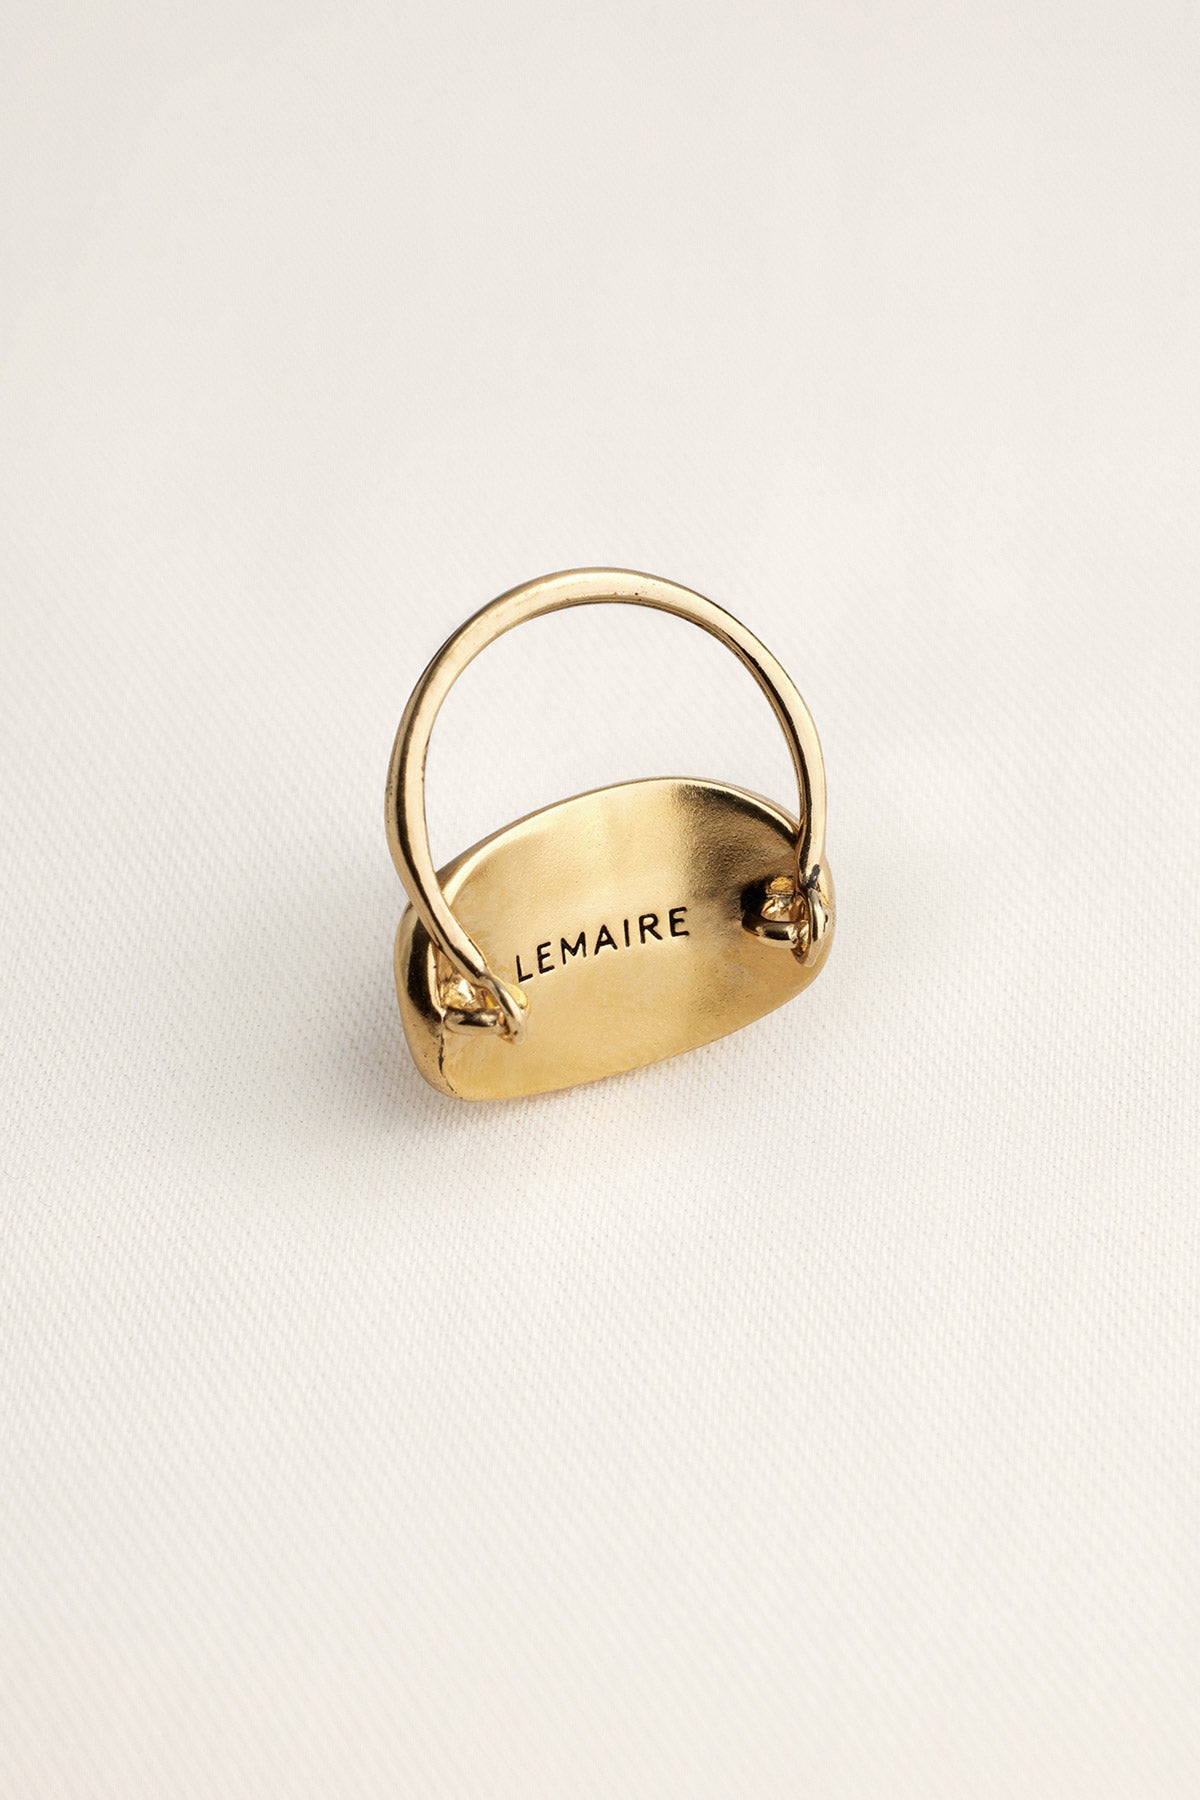 Lemaire — Estampe Trio Rings